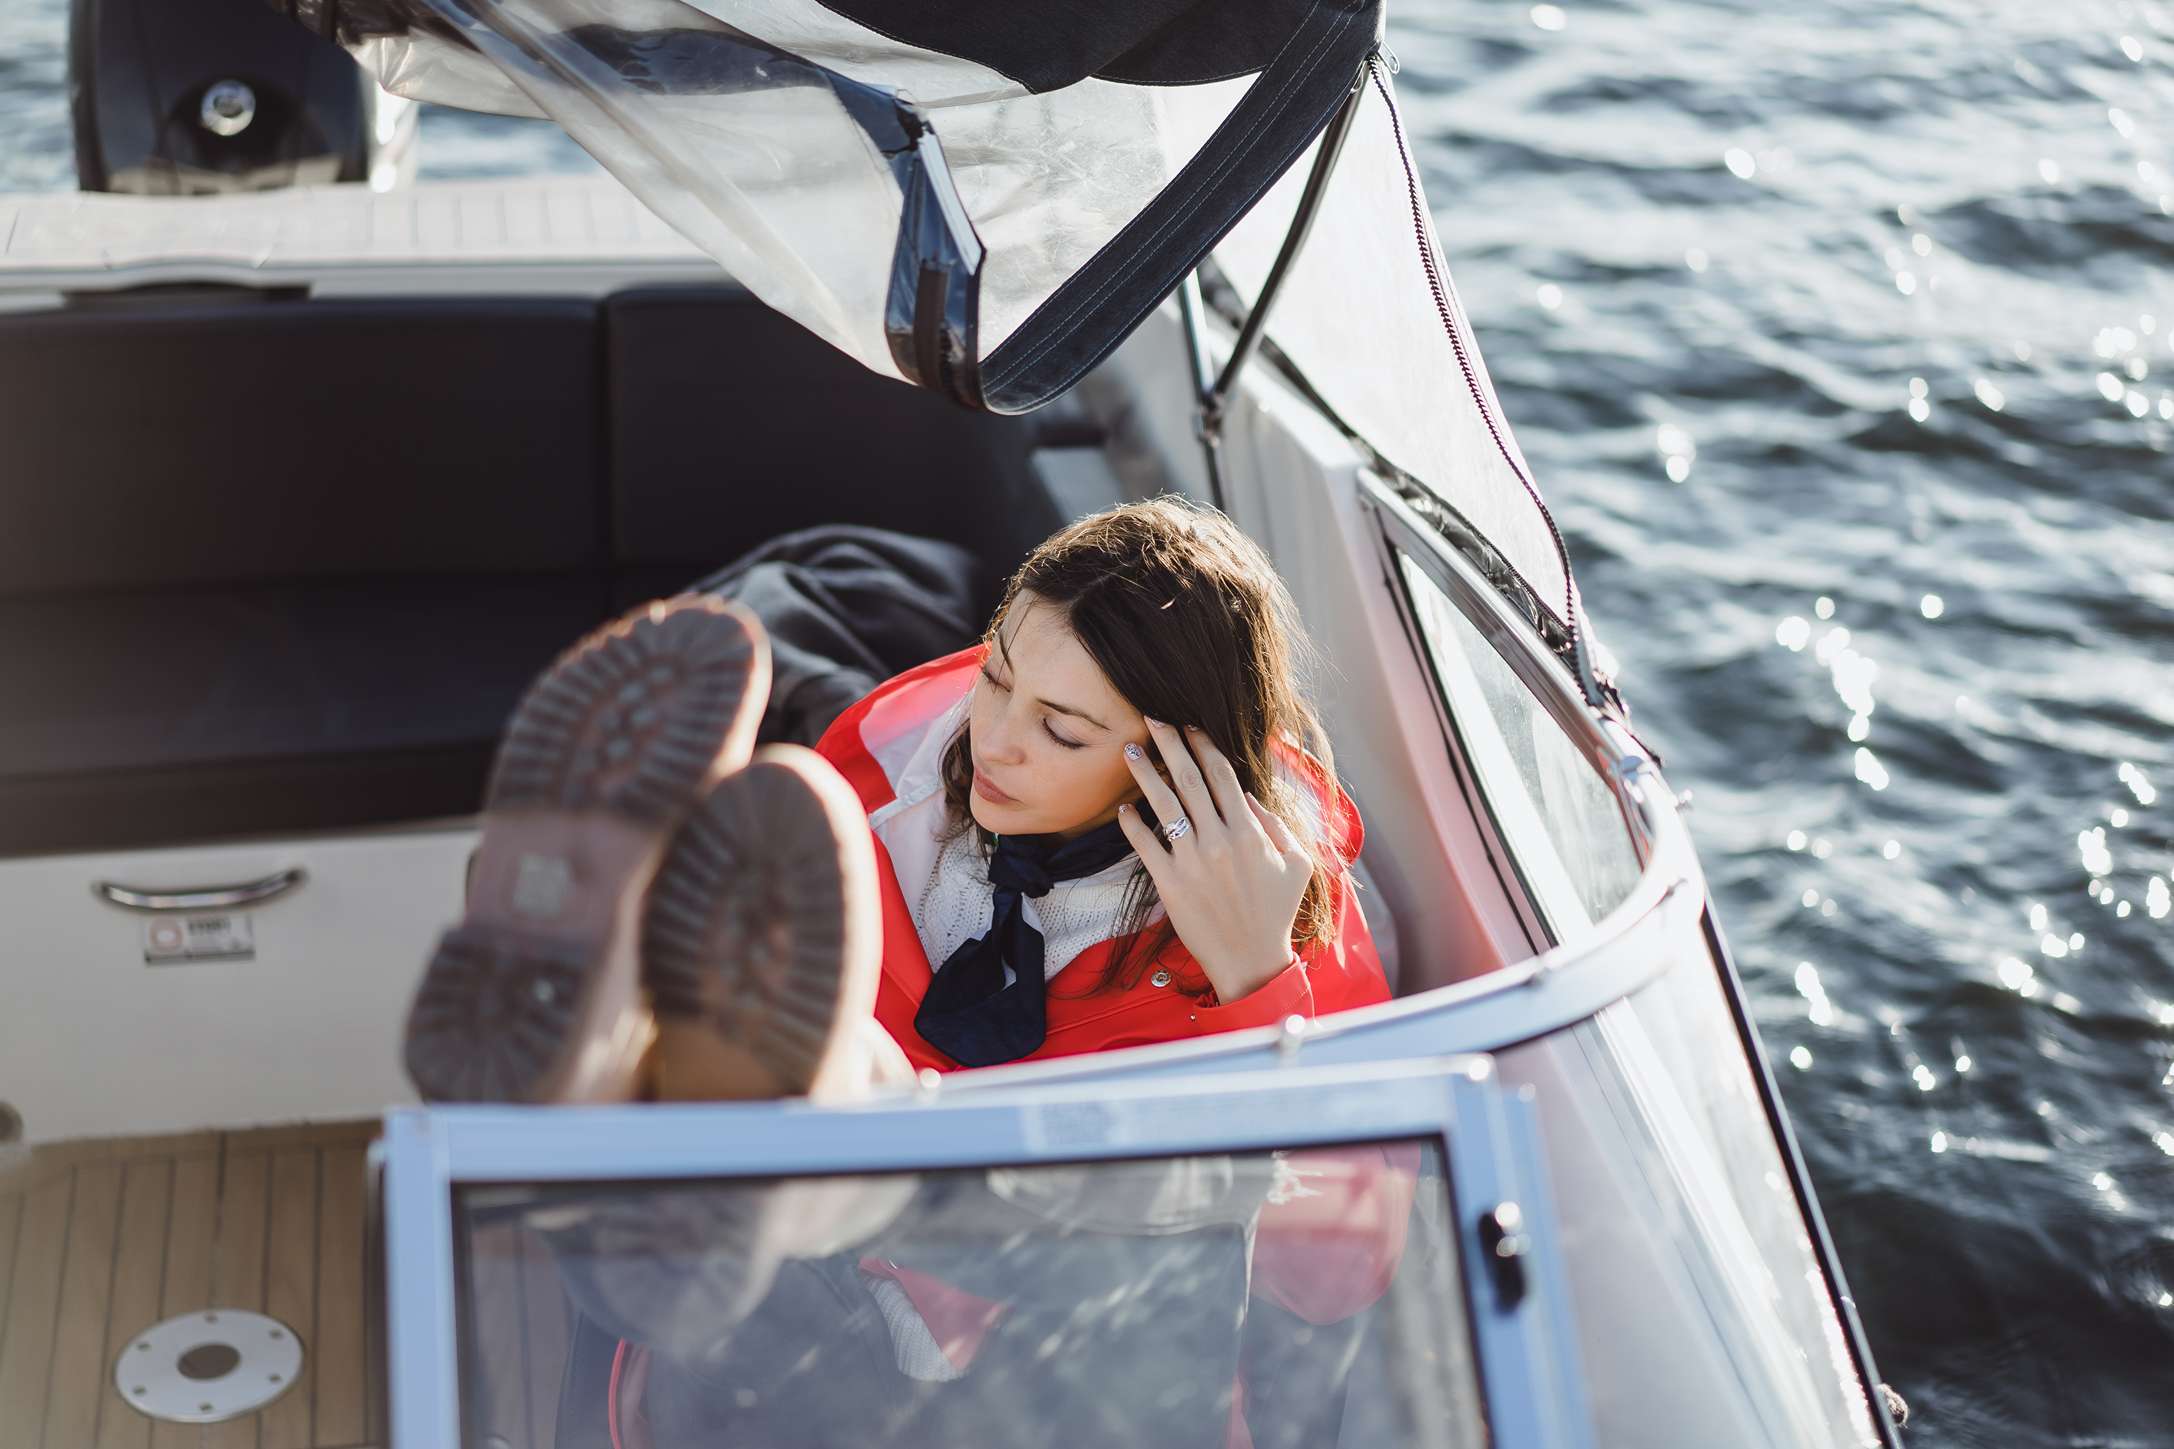 How Do I Prevent Seasickness on the Boat?